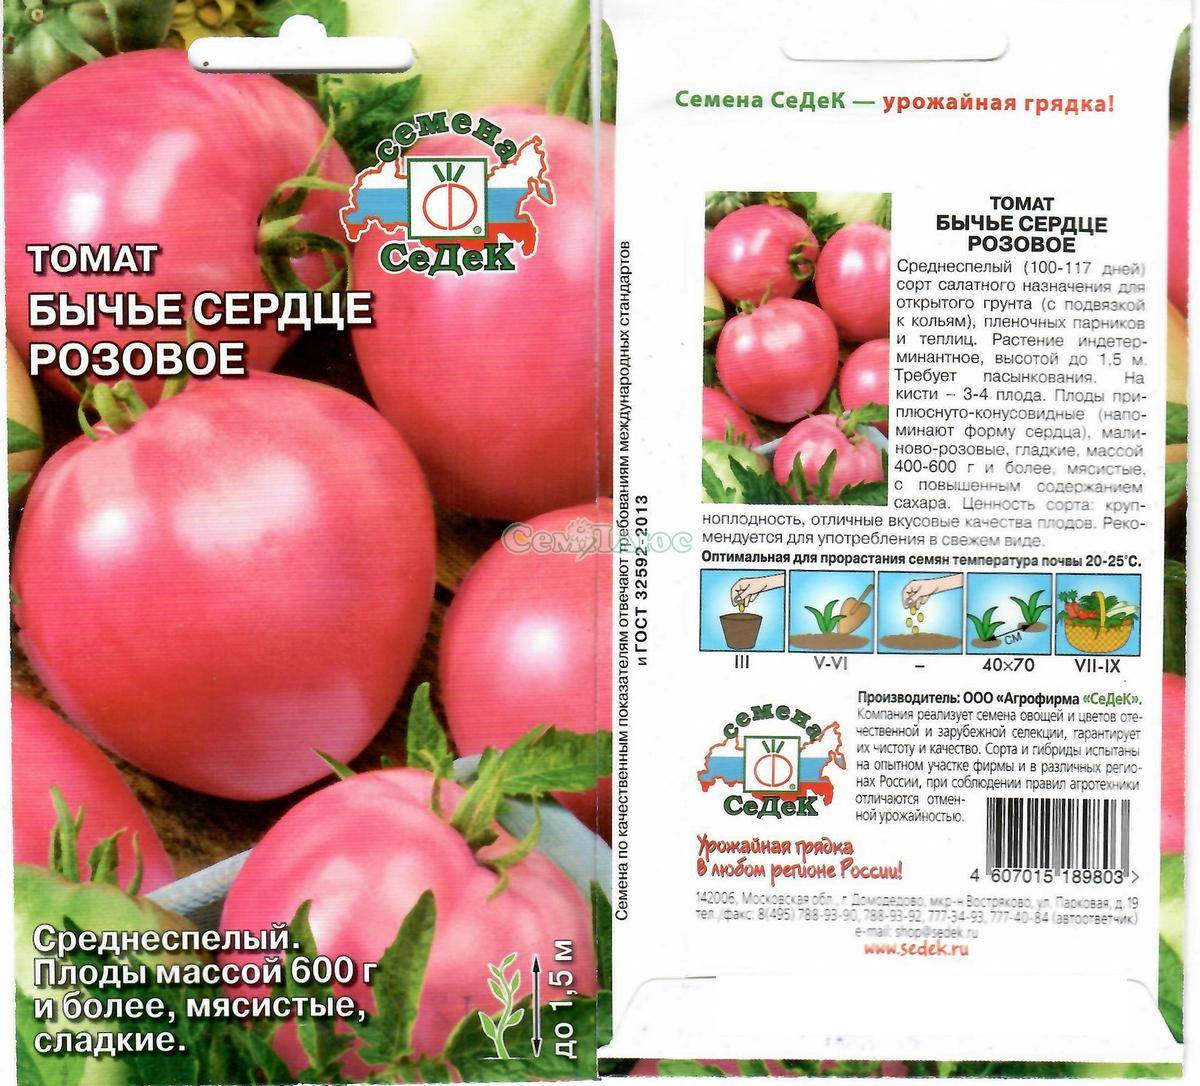 Описание томата Розовое сердце, культивирование и выращивание сорта